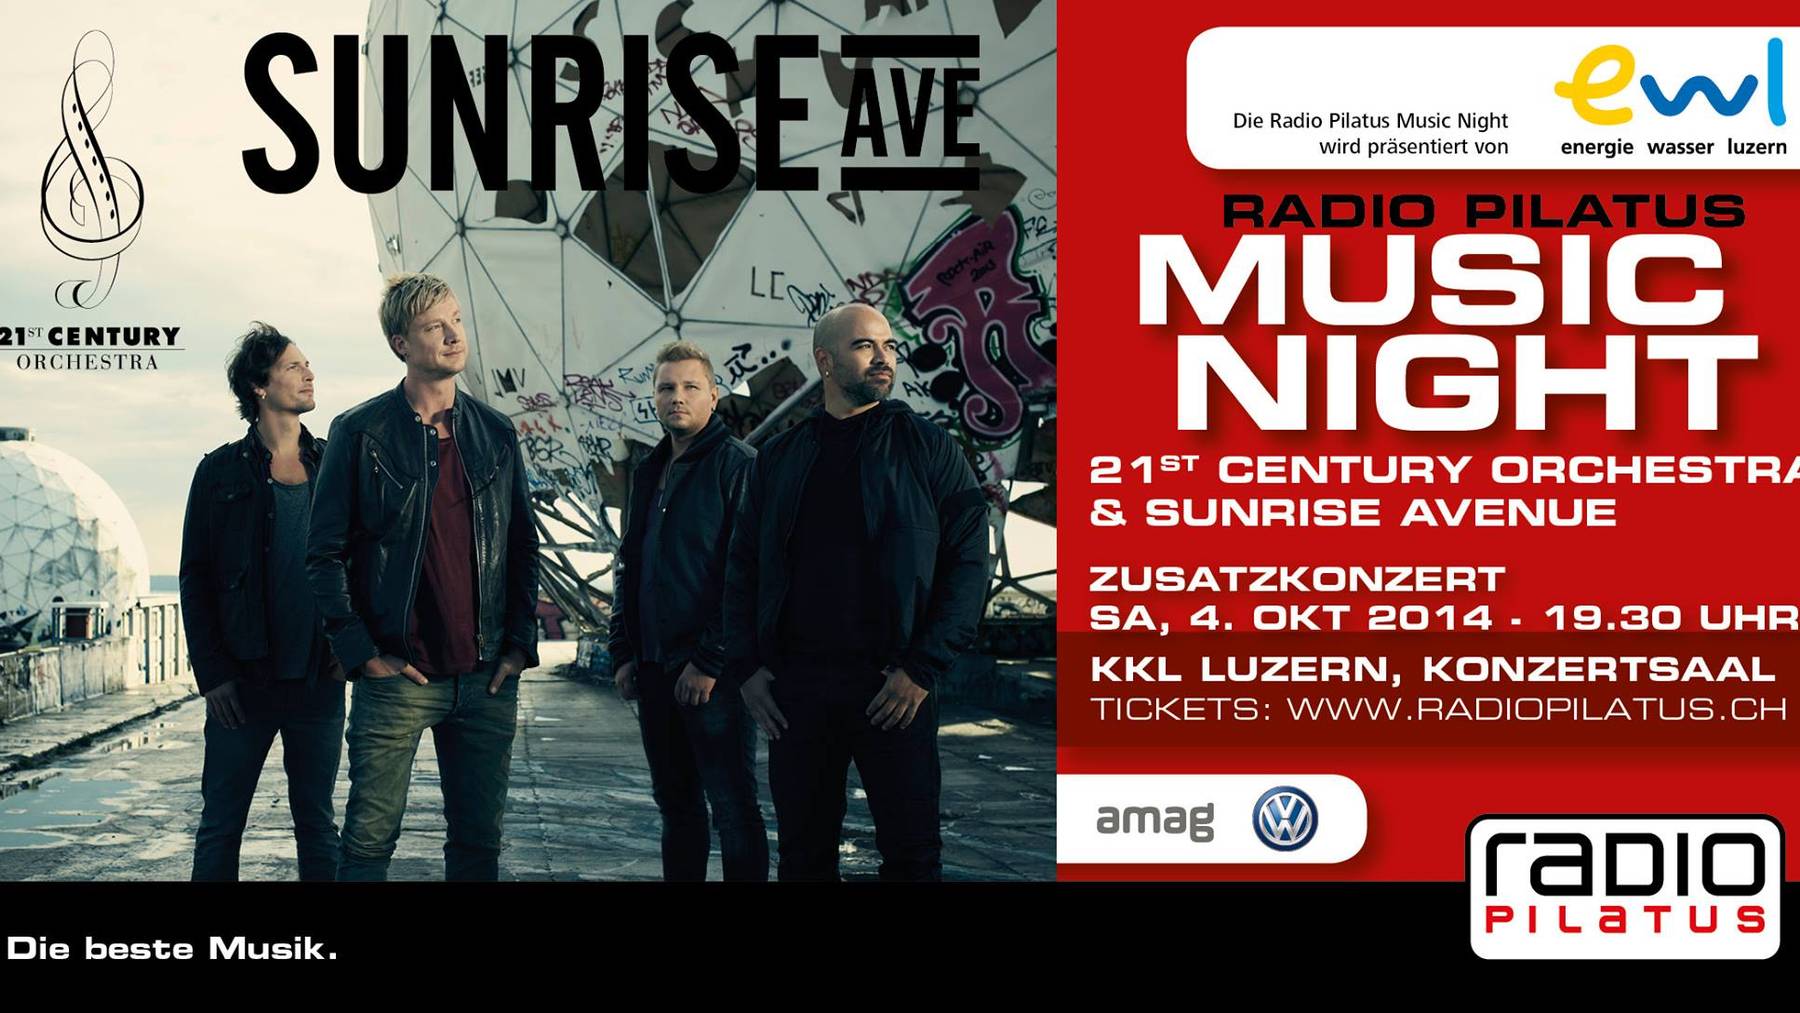 Sunrise Avenue & 21st Century Orchestra: Weitere Tickets erhältlich